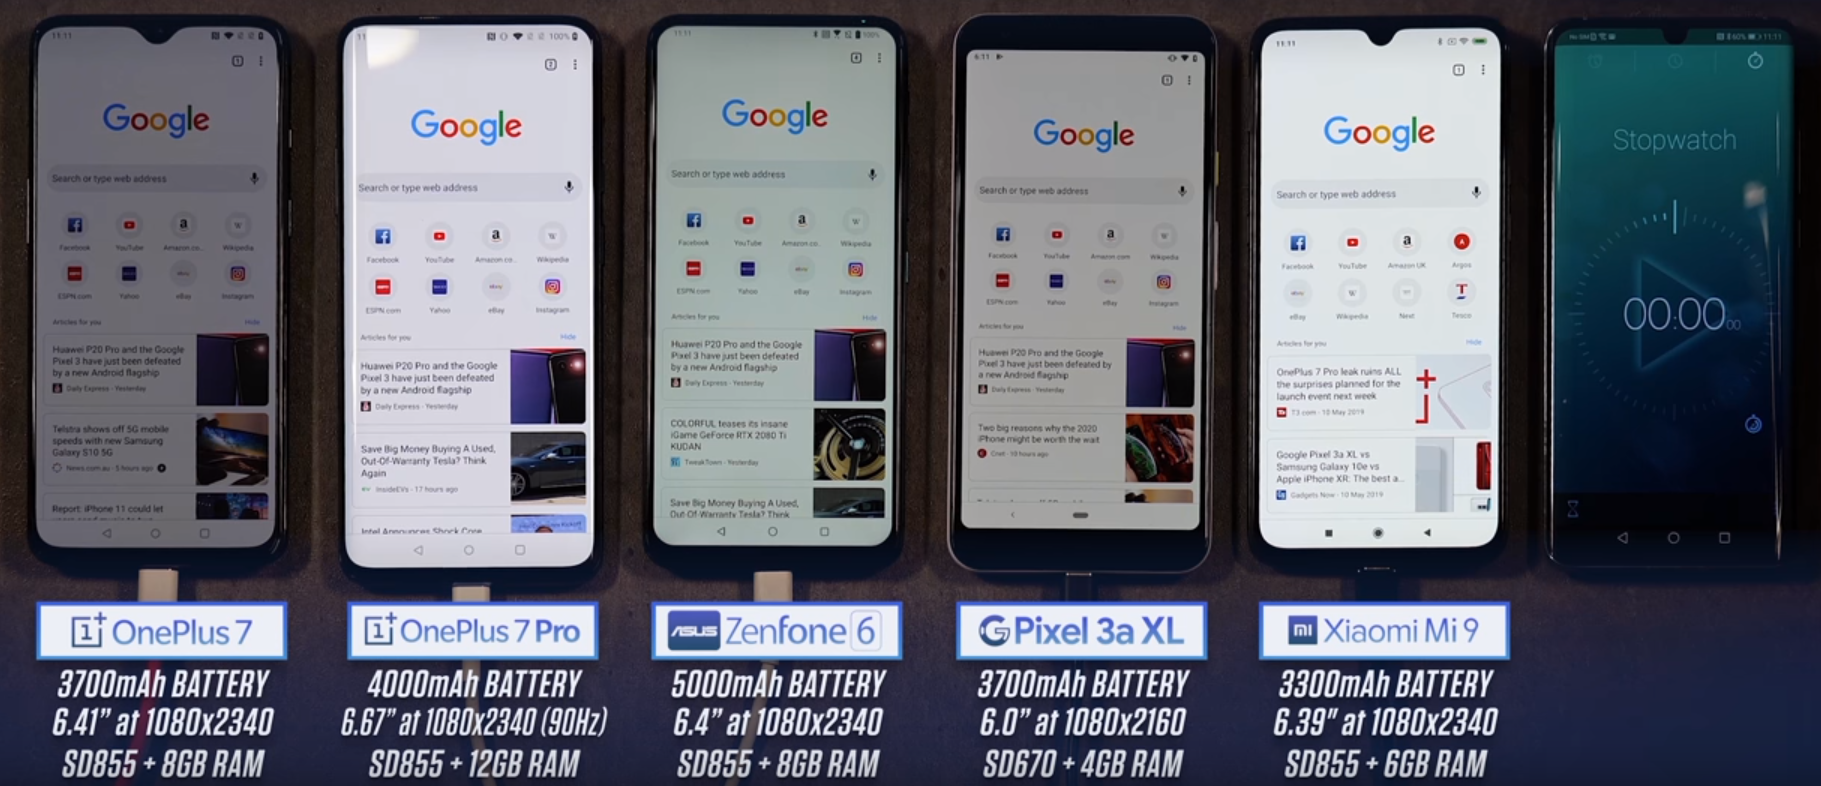 Время автономной работы смартфонов OnePlus 7, OnePlus 7 Pro, Asus Zenfone 6, Google Pixel 3a XL и Xiaomi Mi 9: кто дольше?